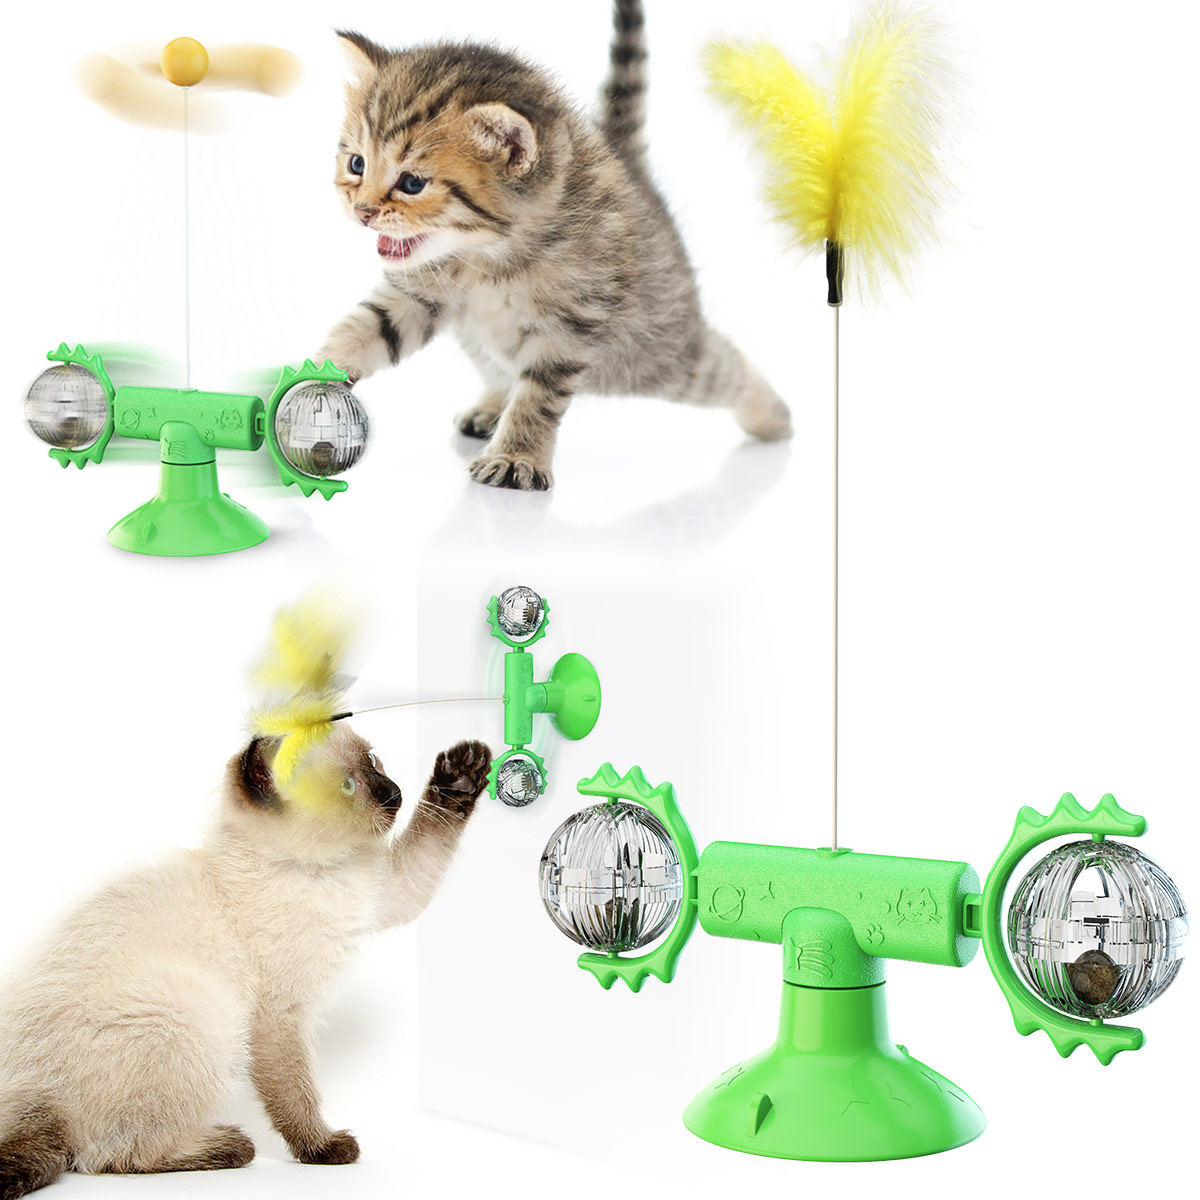 Nova igračka za mačke koja se okreće Meow Planet Rotating Windmill